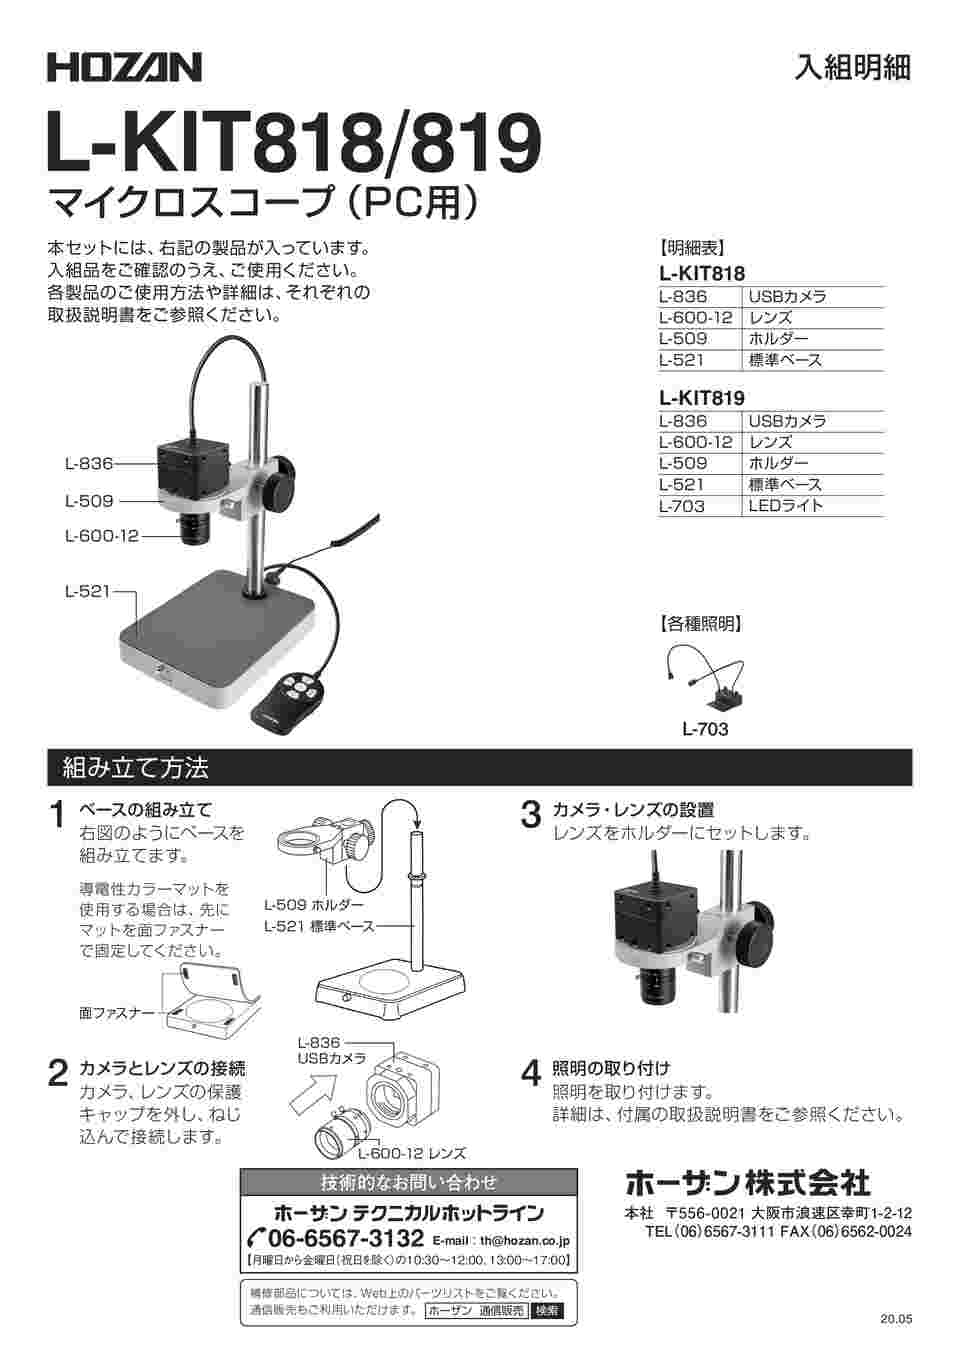 上等 KanamonoYaSan KYSホーザン マイクロスコープ PC用 L-KIT793